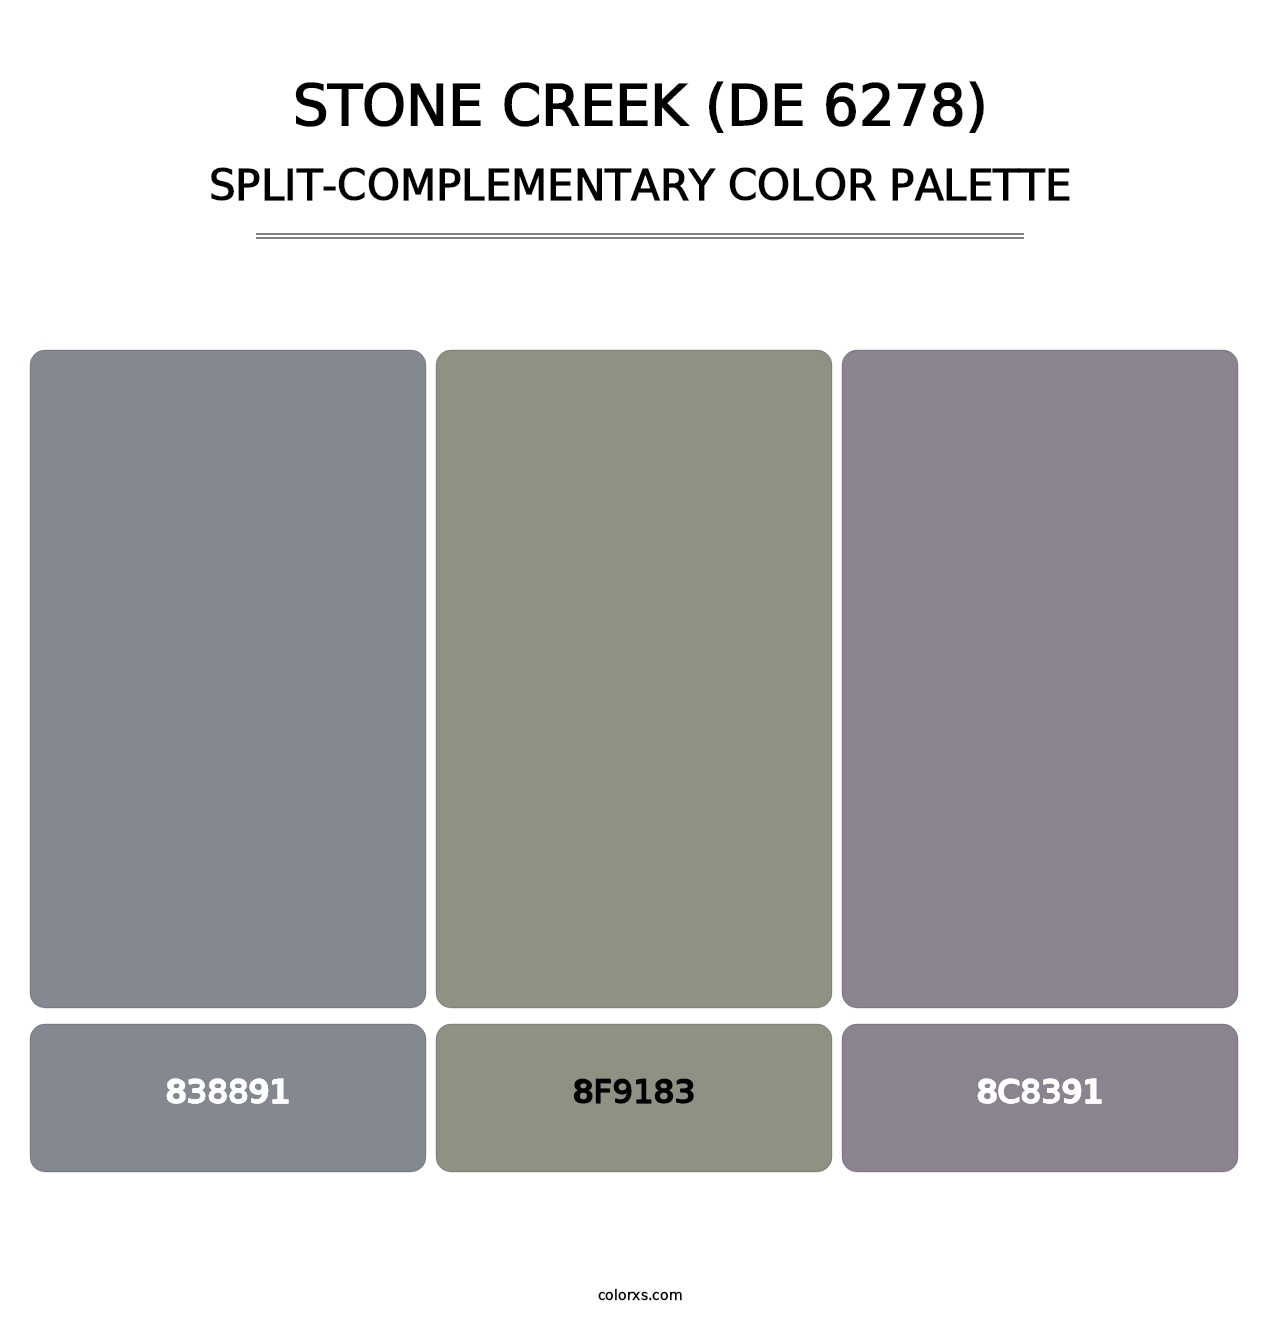 Stone Creek (DE 6278) - Split-Complementary Color Palette